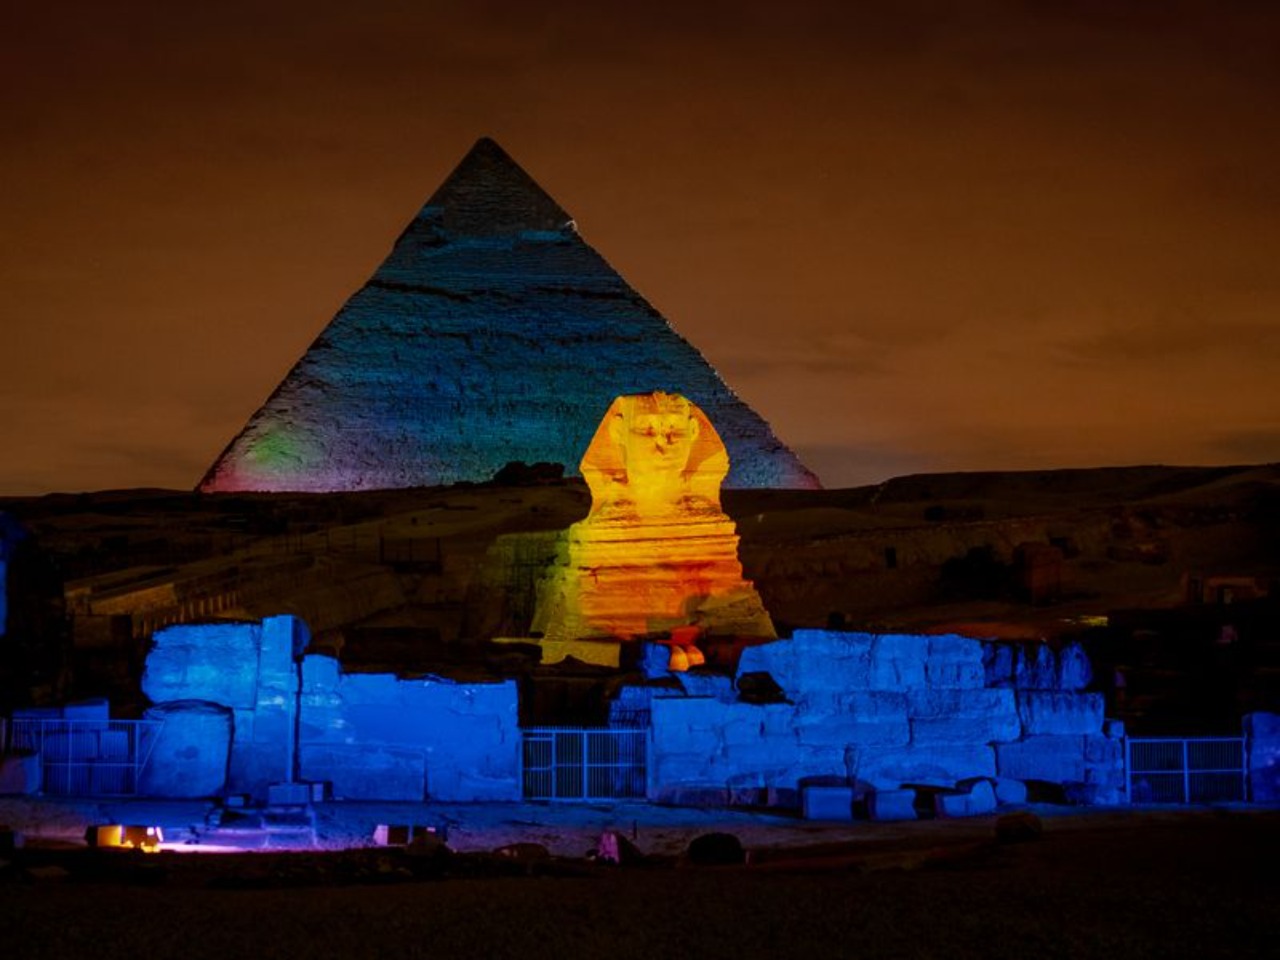 Пирамиды Гизы ночью: феерия звука и света! | Цена 91€, отзывы, описание экскурсии